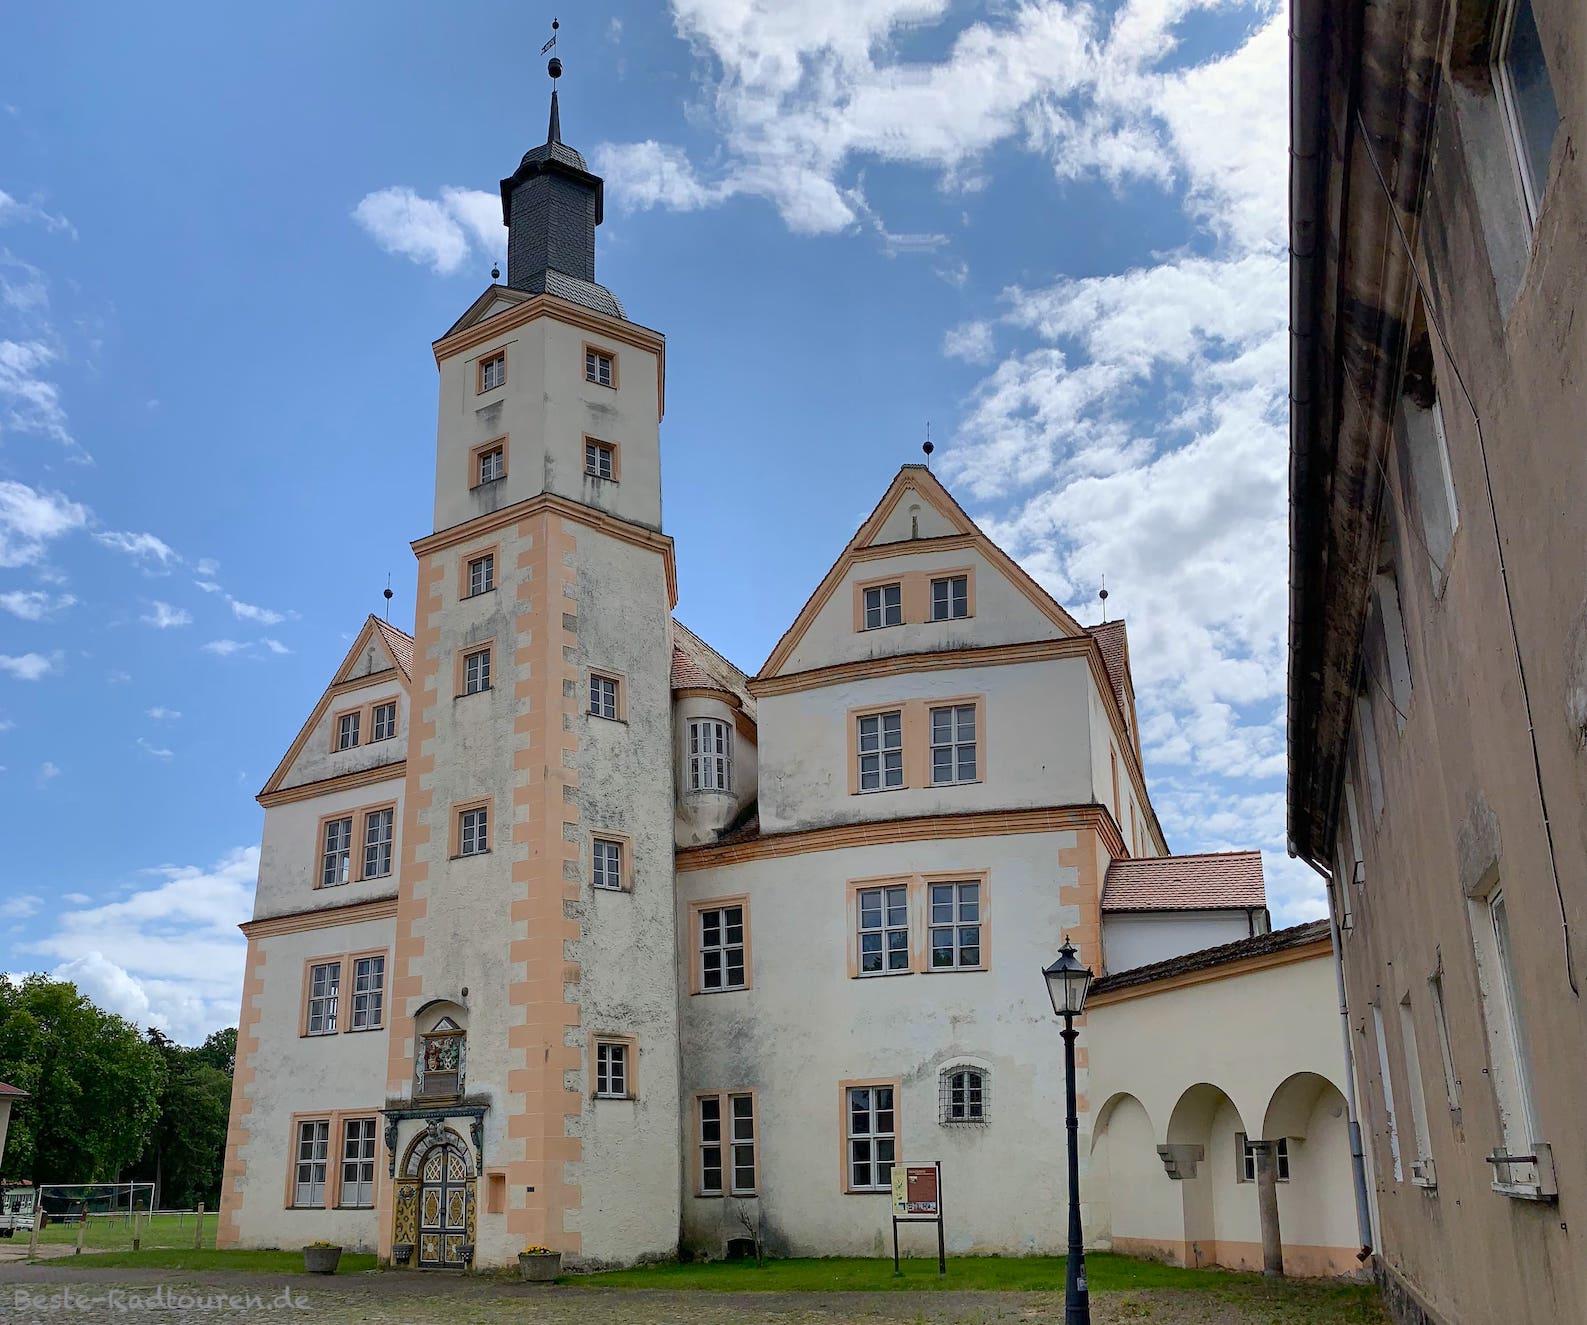 Foto vom Norden her: Schloss Demerthin, Vorderseite